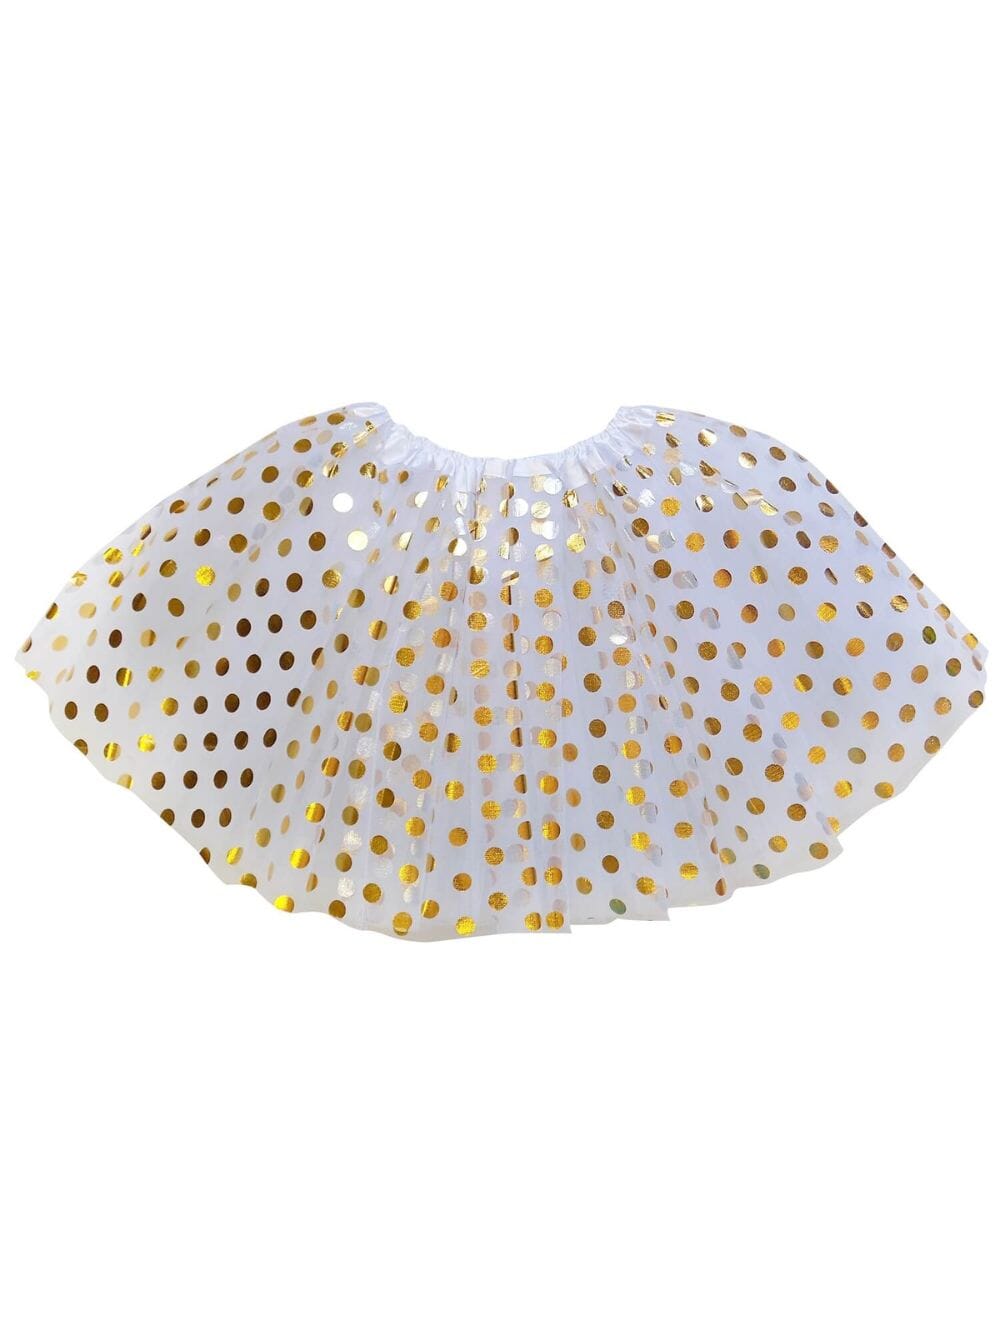 White and Gold Polka Dot Tutu Skirt Costume for Girls, Women, Plus - Sydney So Sweet